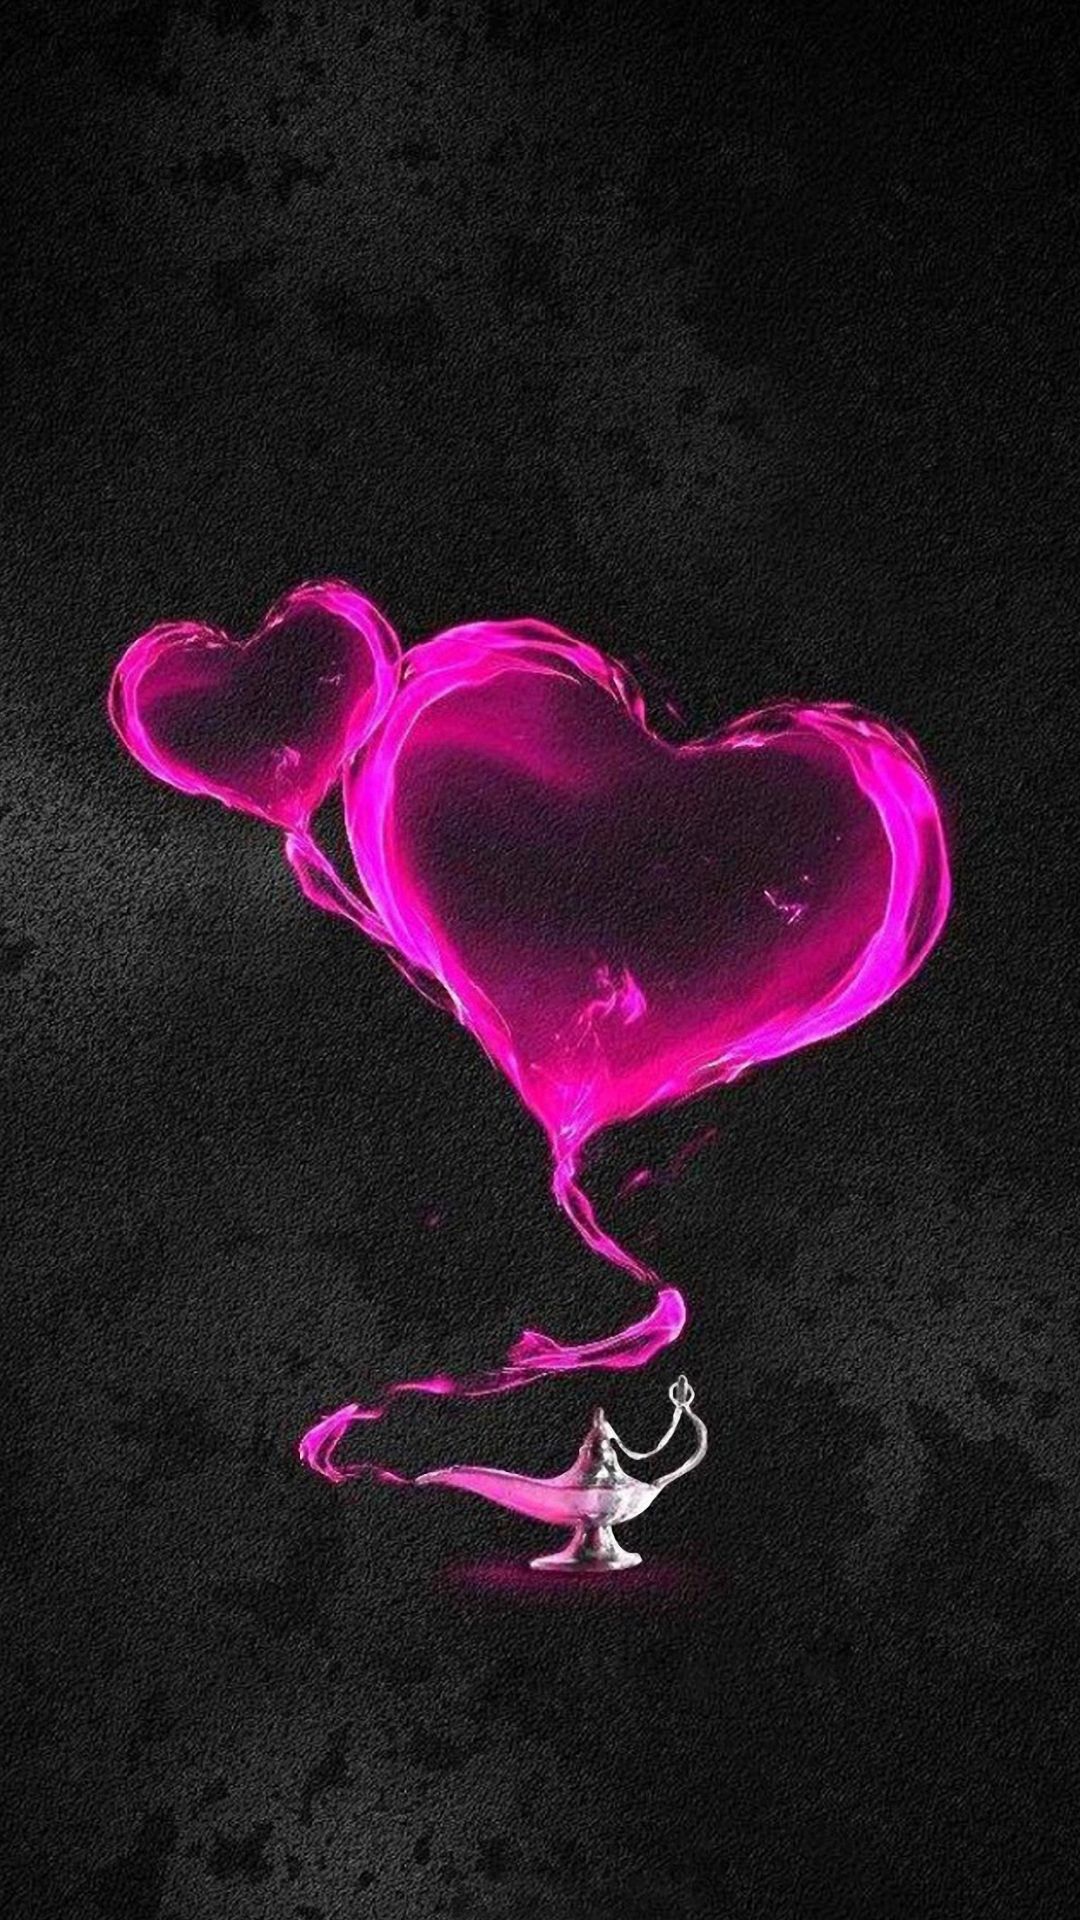 papel pintado rosado del teléfono,rosado,corazón,amor,cuerpo humano,neón